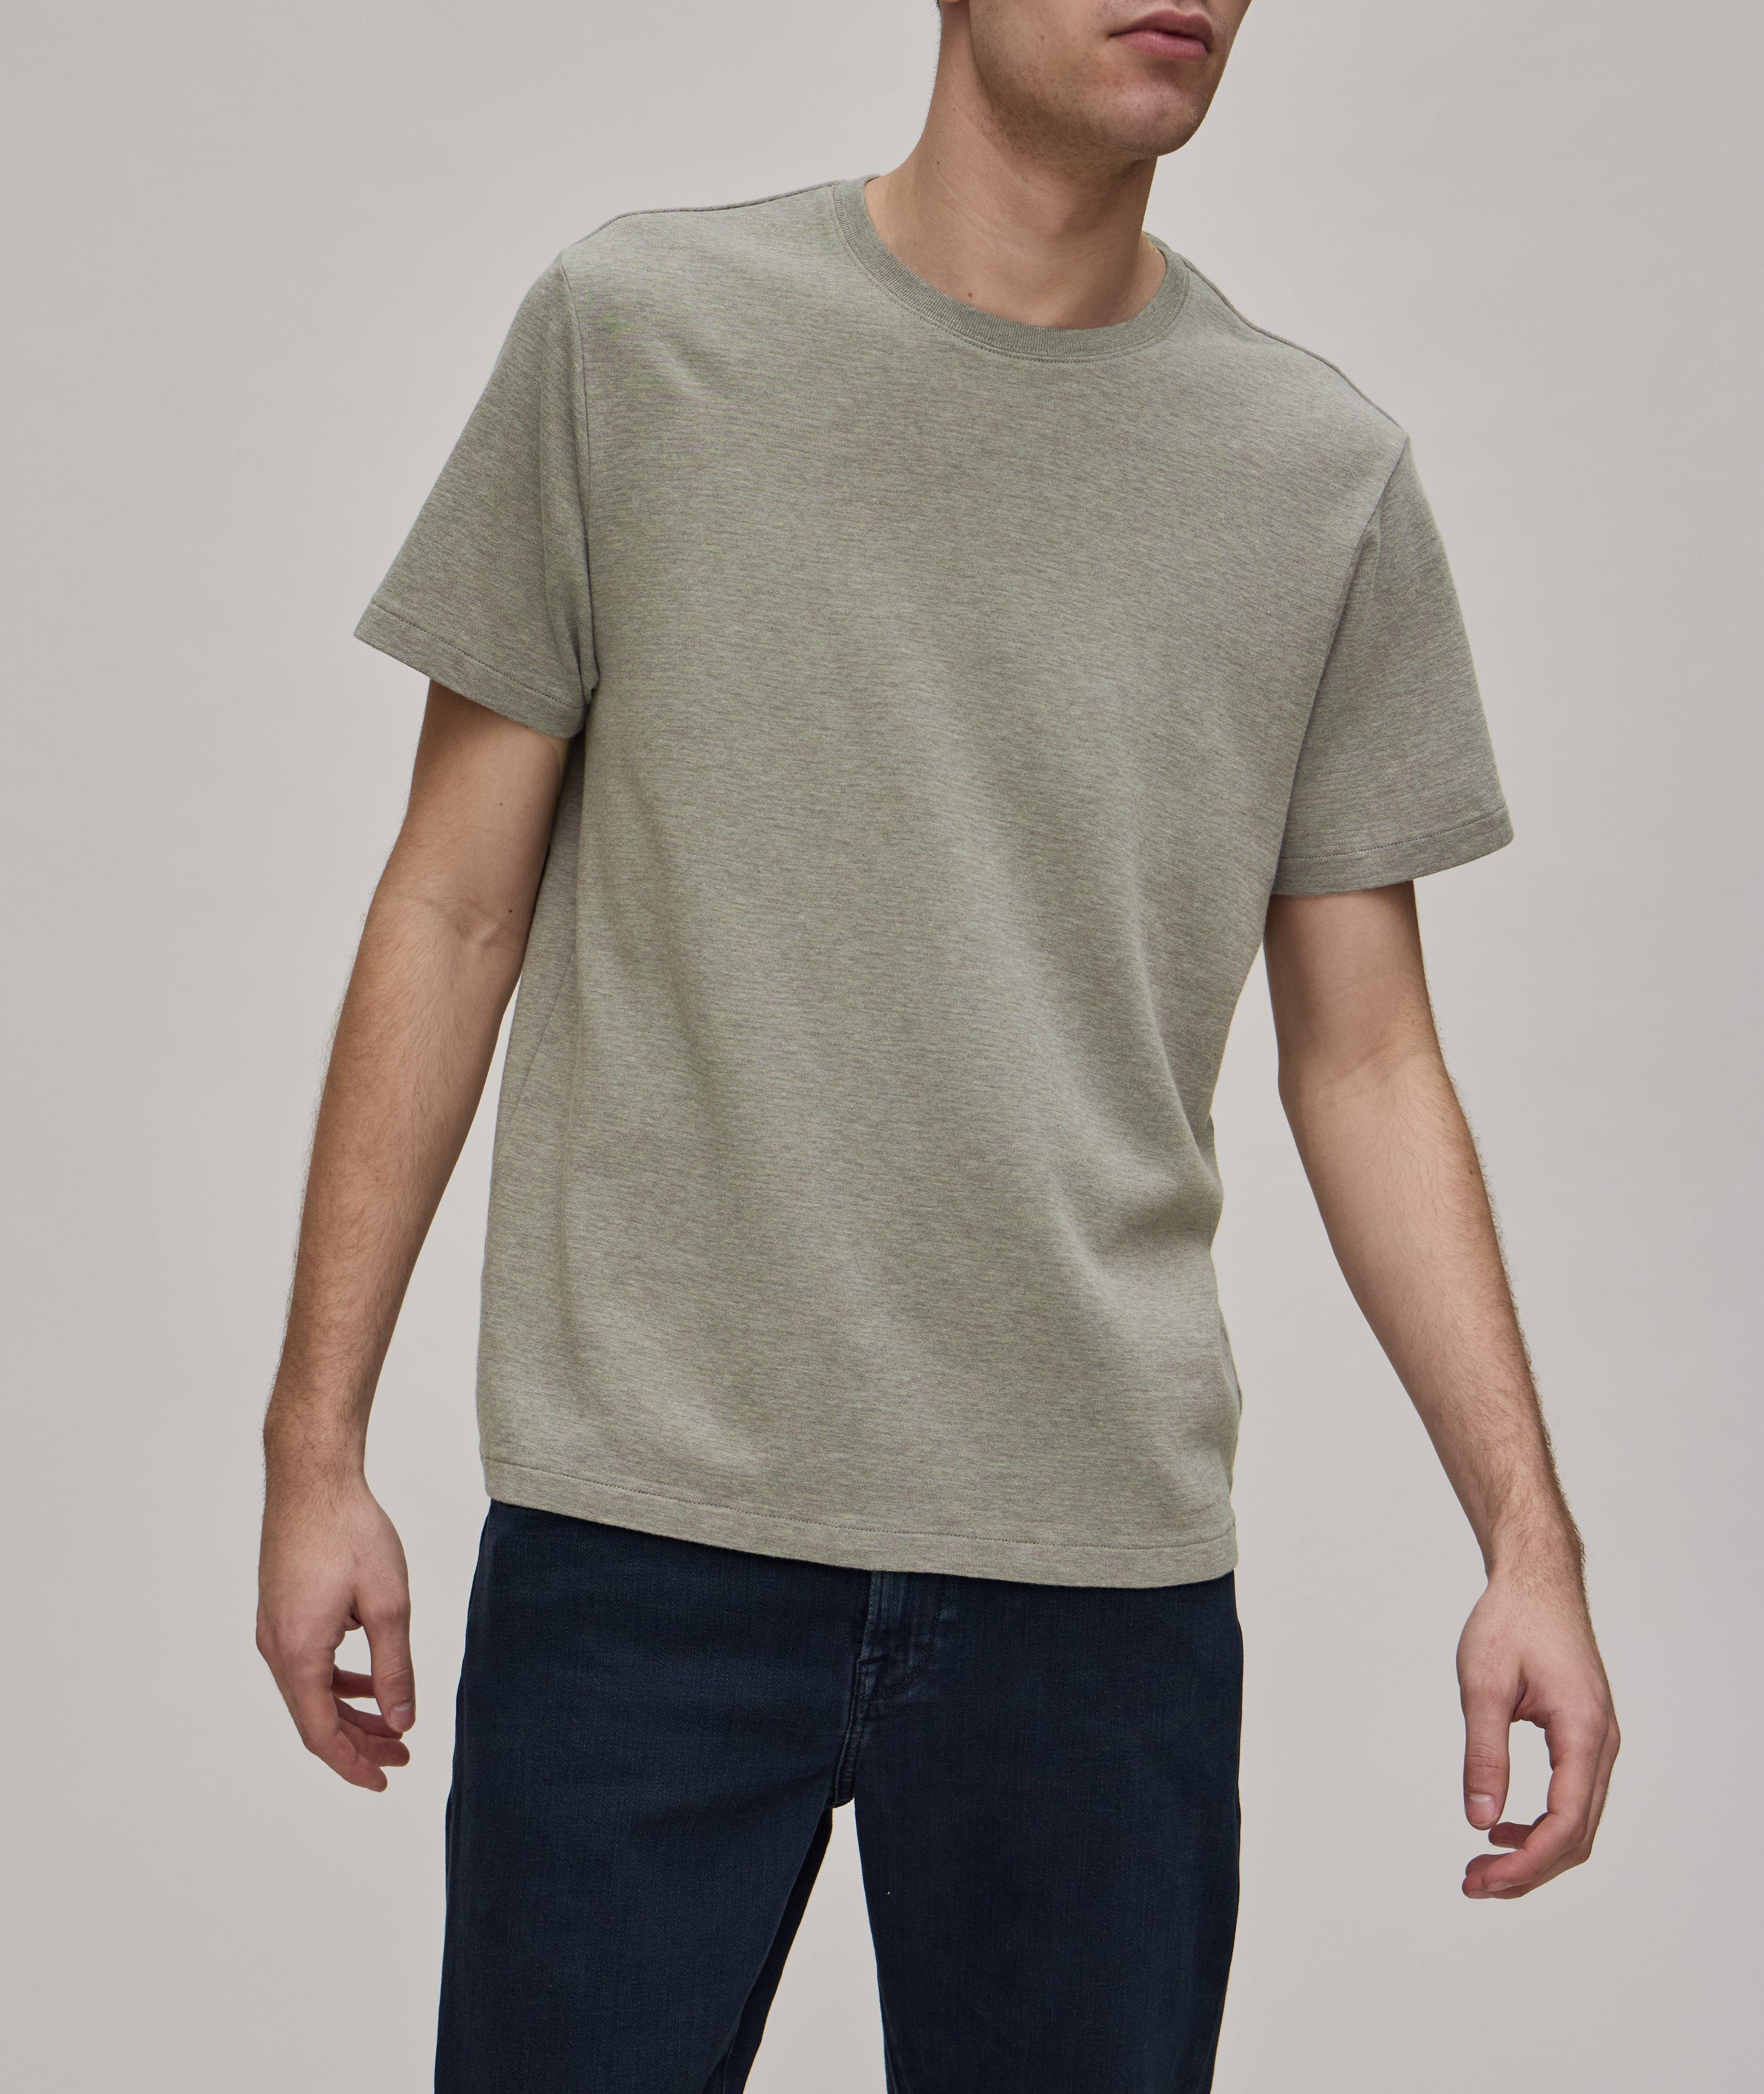 Duo Fold Cotton T-Shirt image 1